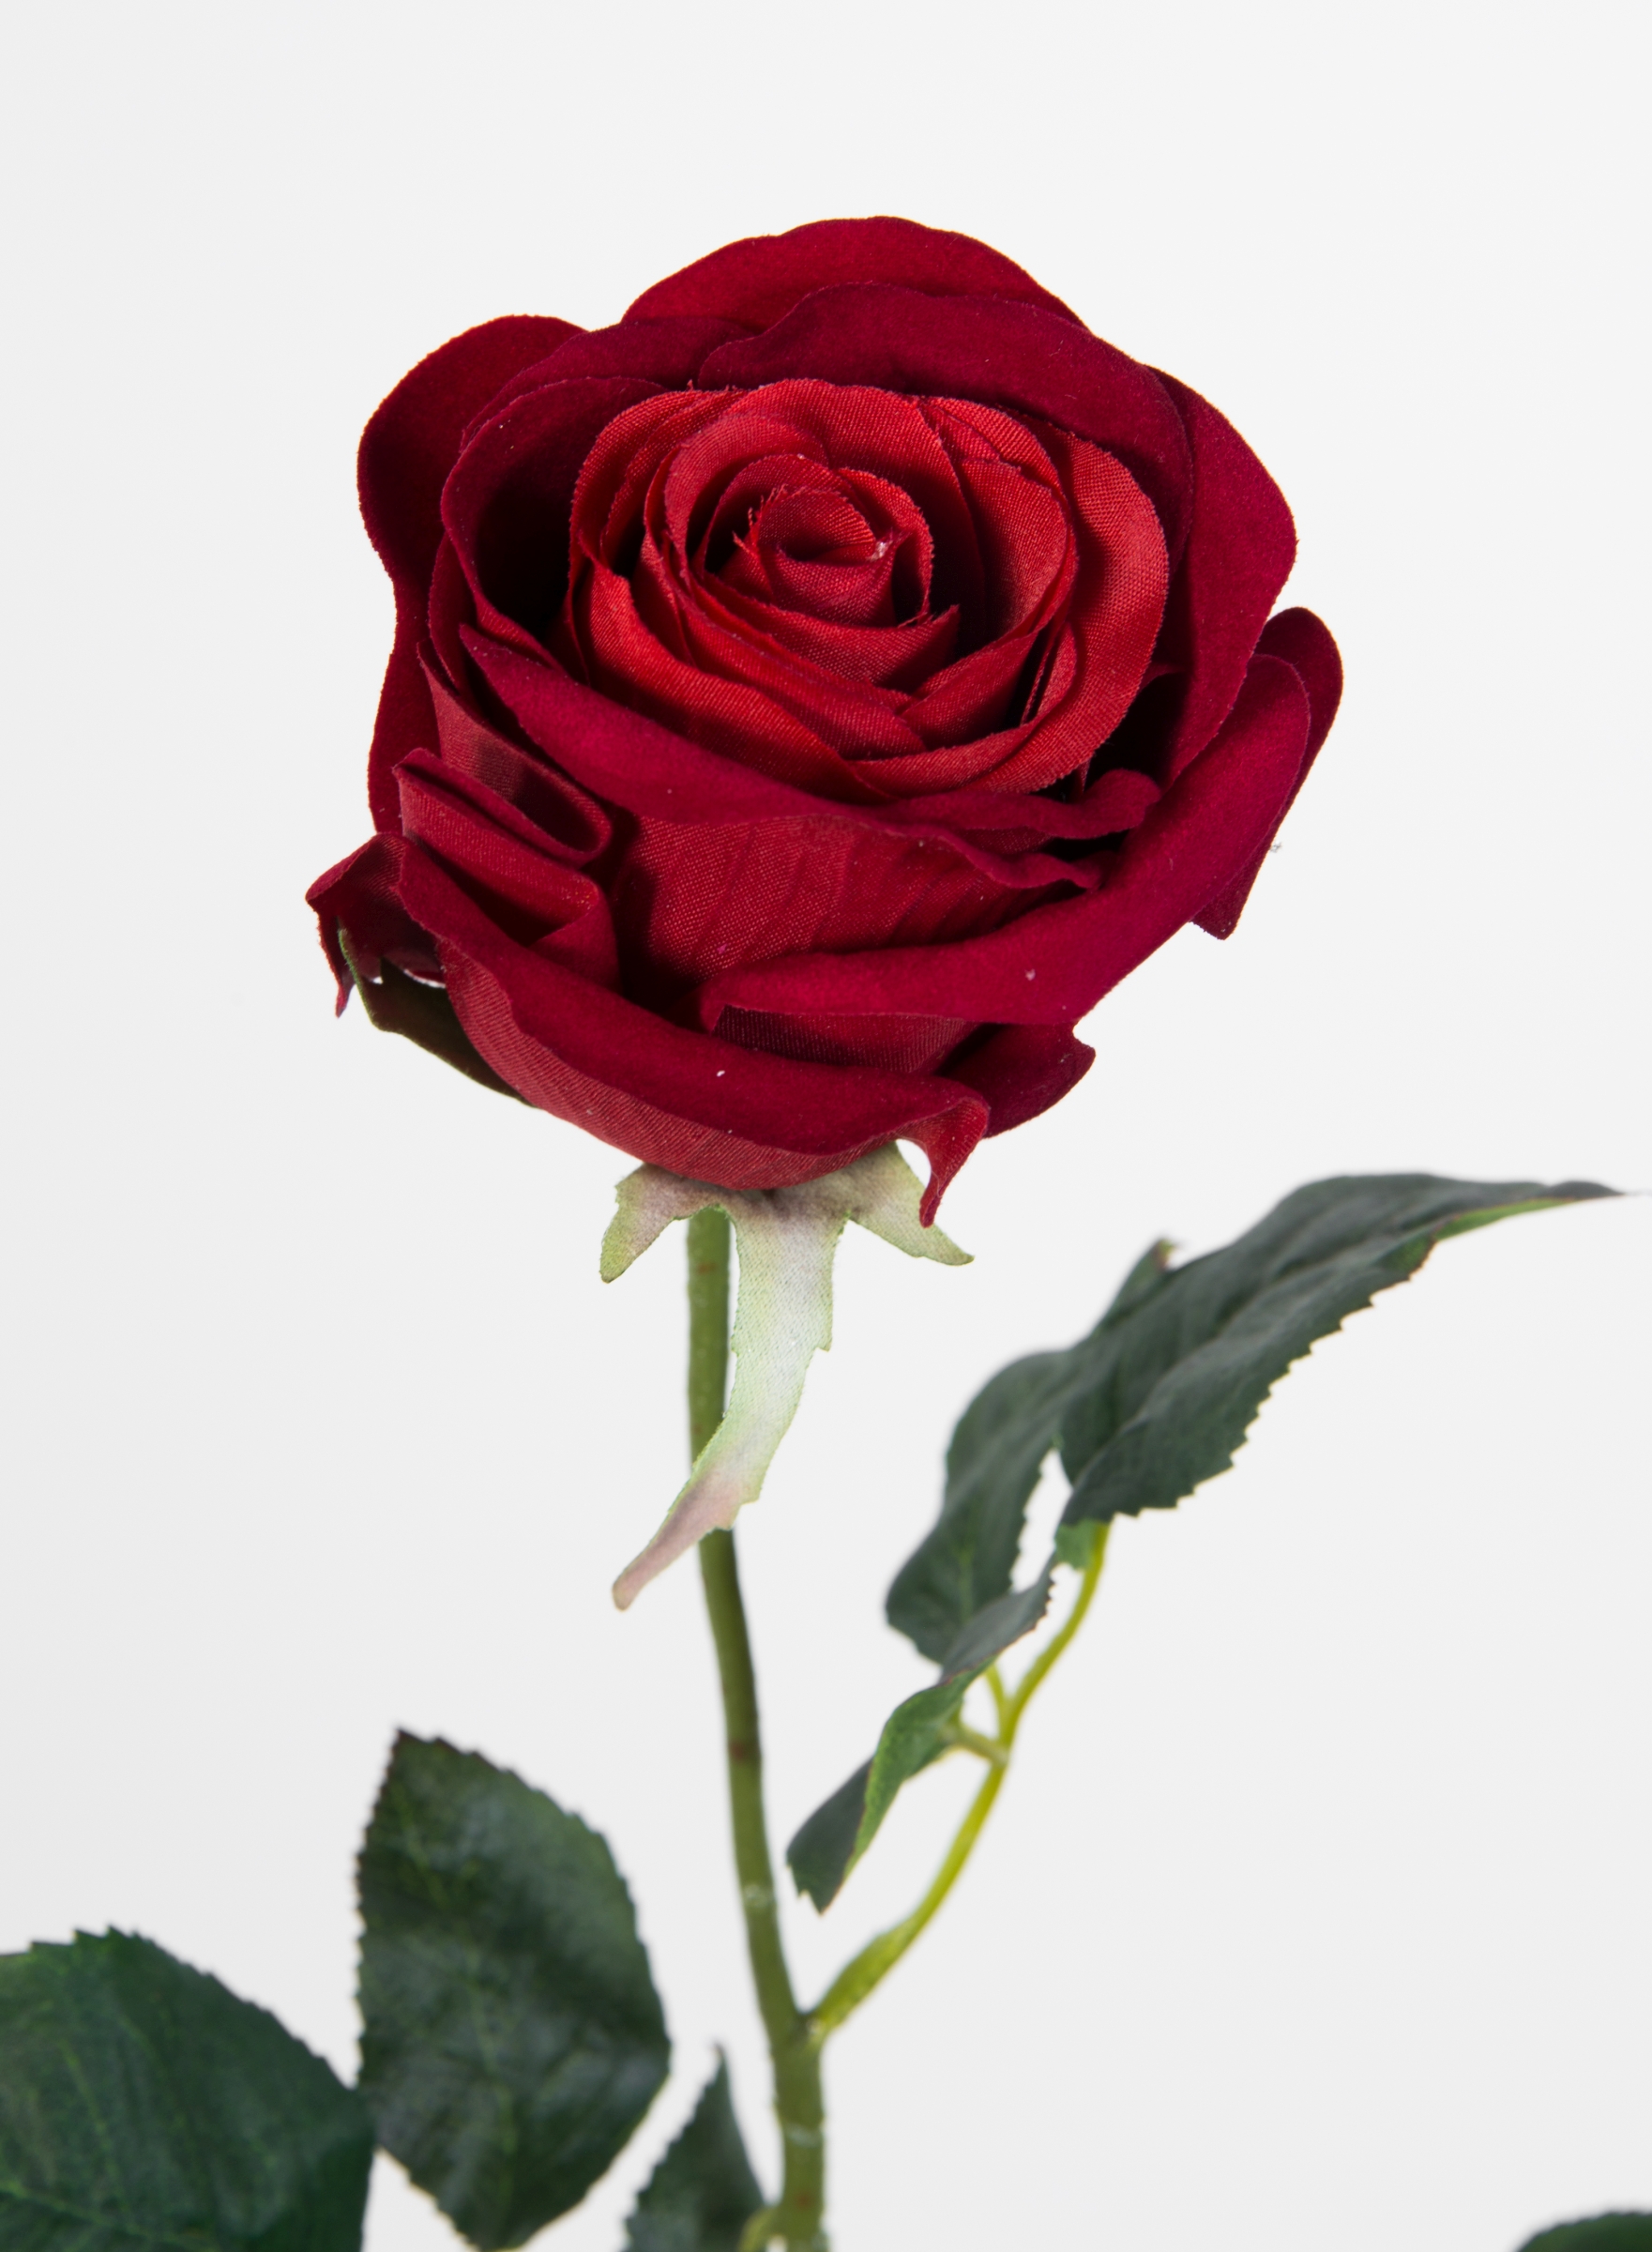 PM 68cm Baccararose 12 künstliche Rose Kunstblumen Stück Seidenblumen Rosen Blumen rot